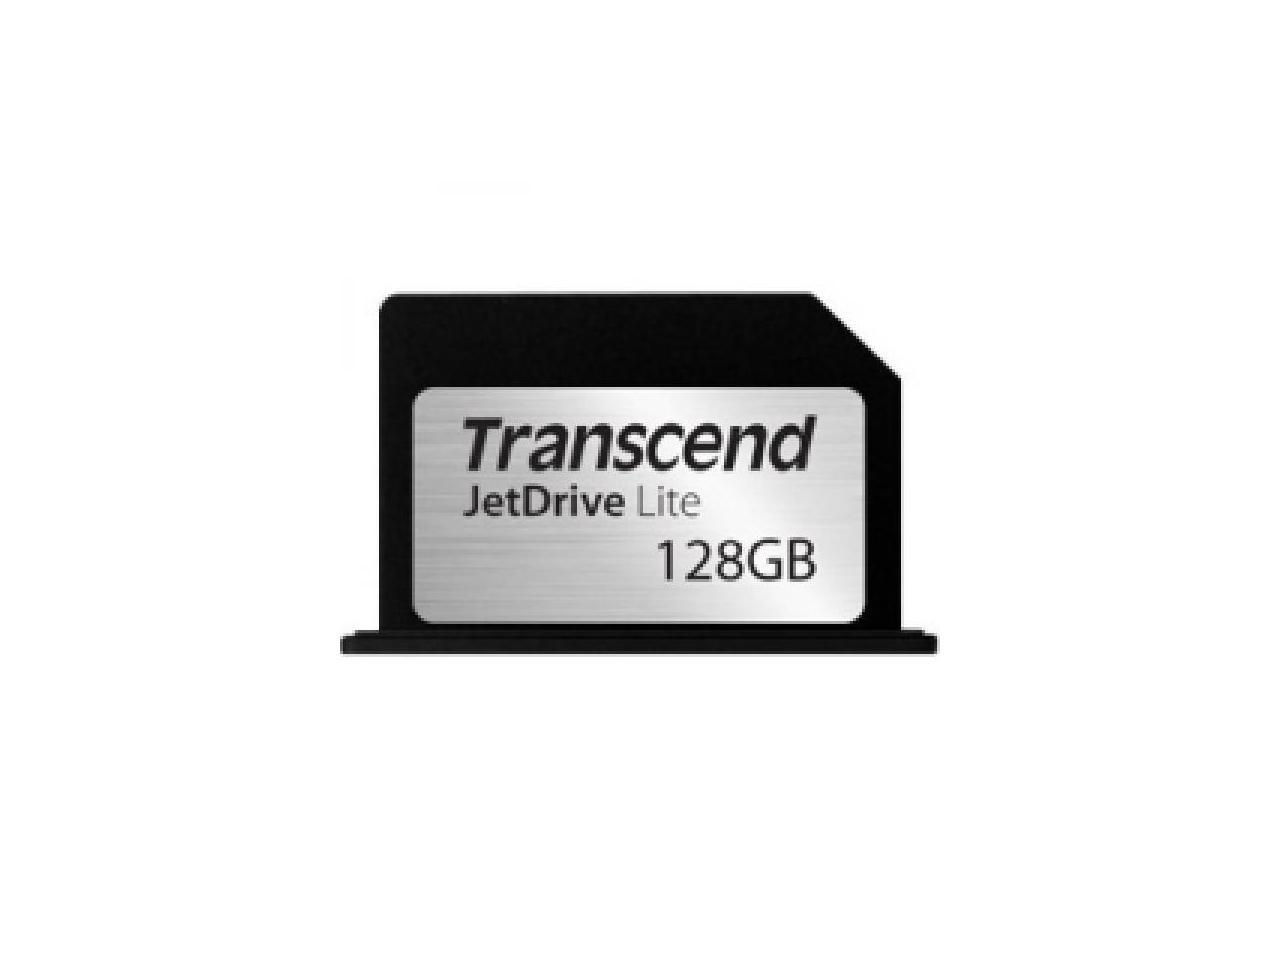 Transcend - TS128GJDL330 - Transcend 330 128 GB JetDrive Lite - 95 MB/s Read - 60 MB/s Write - 1 Card